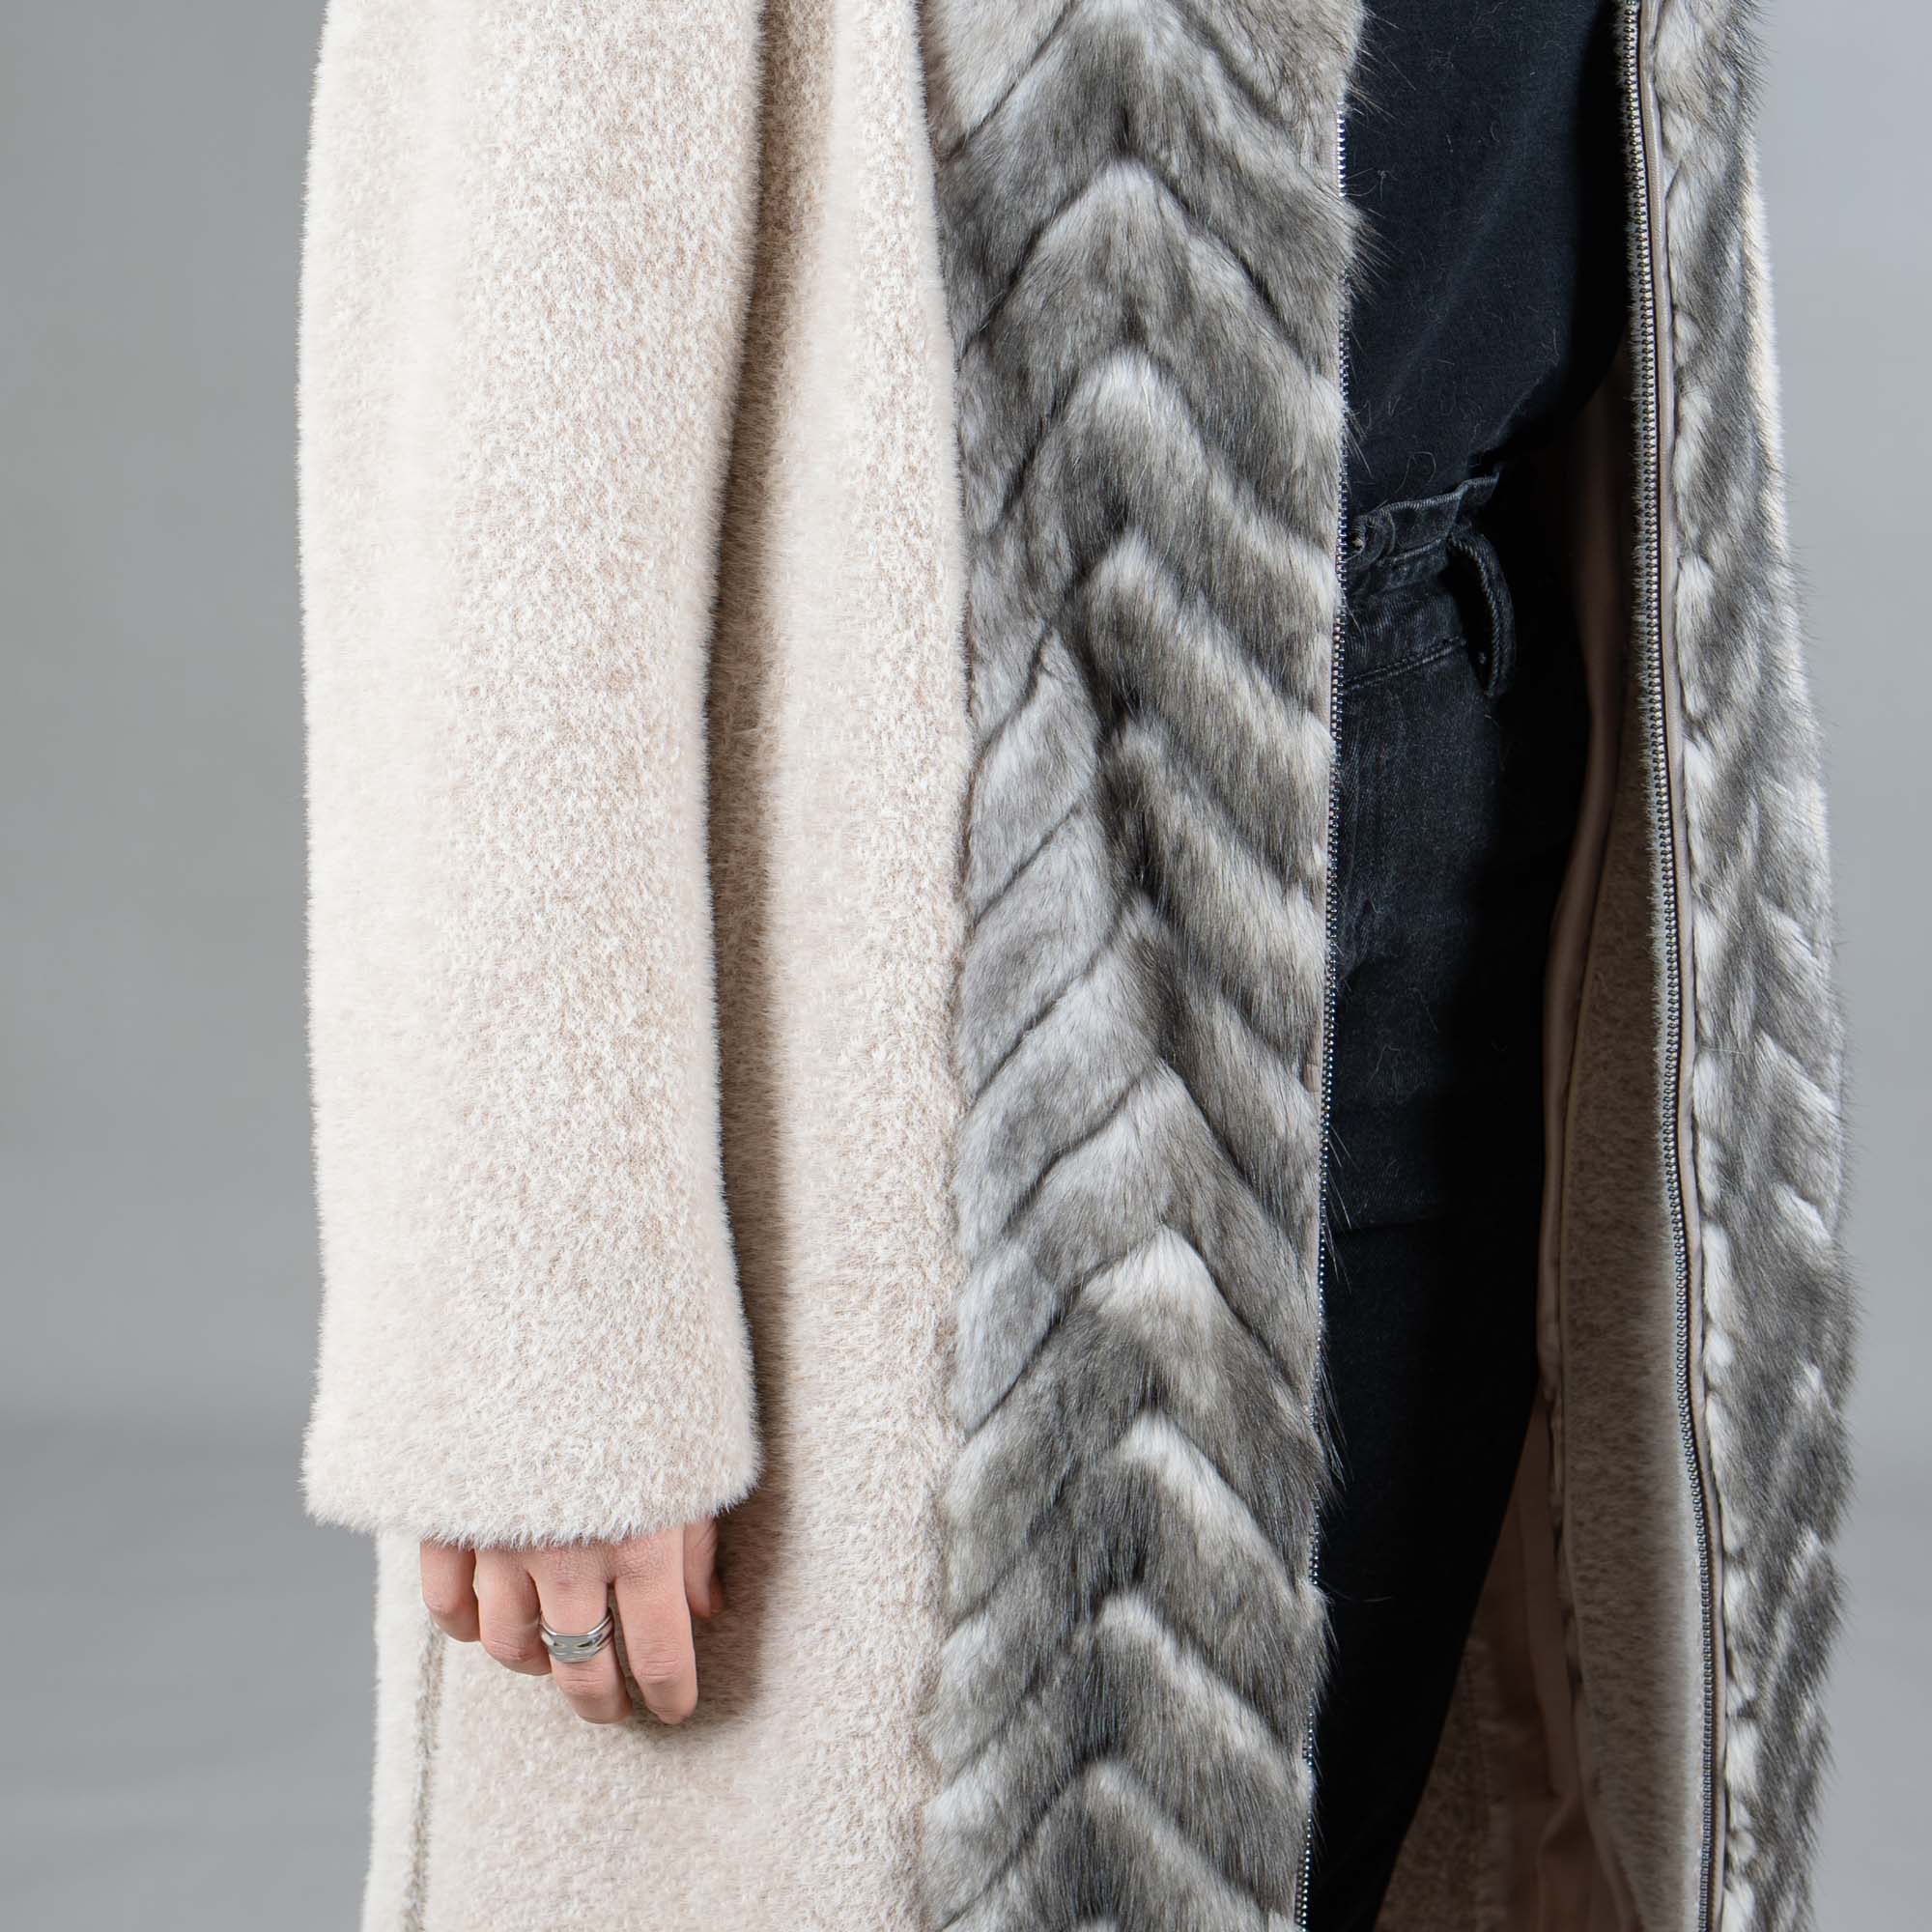 Cashmere coat with mink fur details in beige color